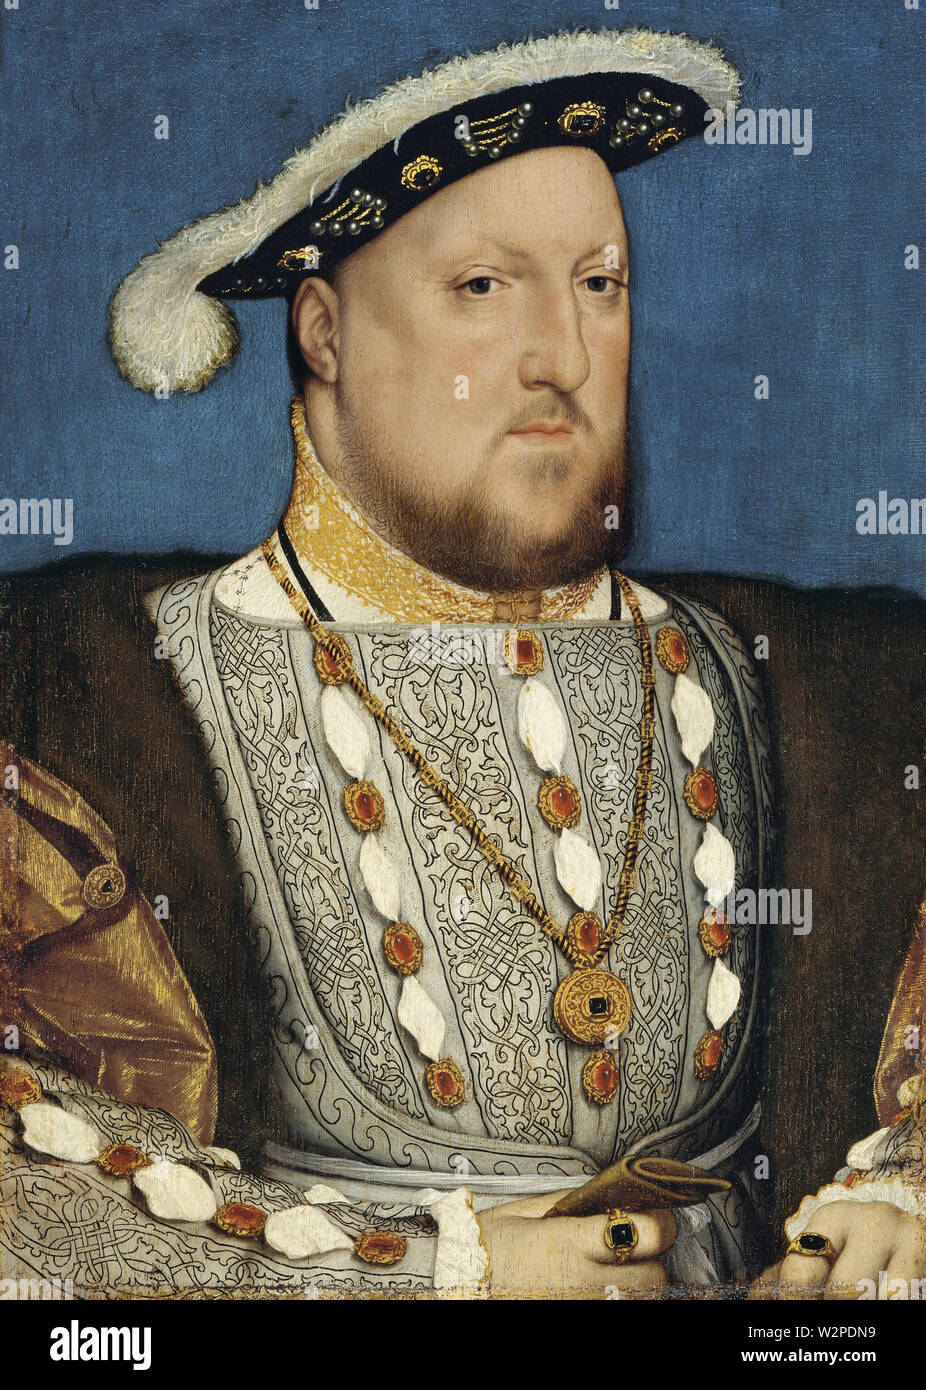 Portrait de Henry VIII d'Angleterre (1536) Peinture de Hans Holbein le Jeune - Très haute résolution et l'image de la qualité Banque D'Images